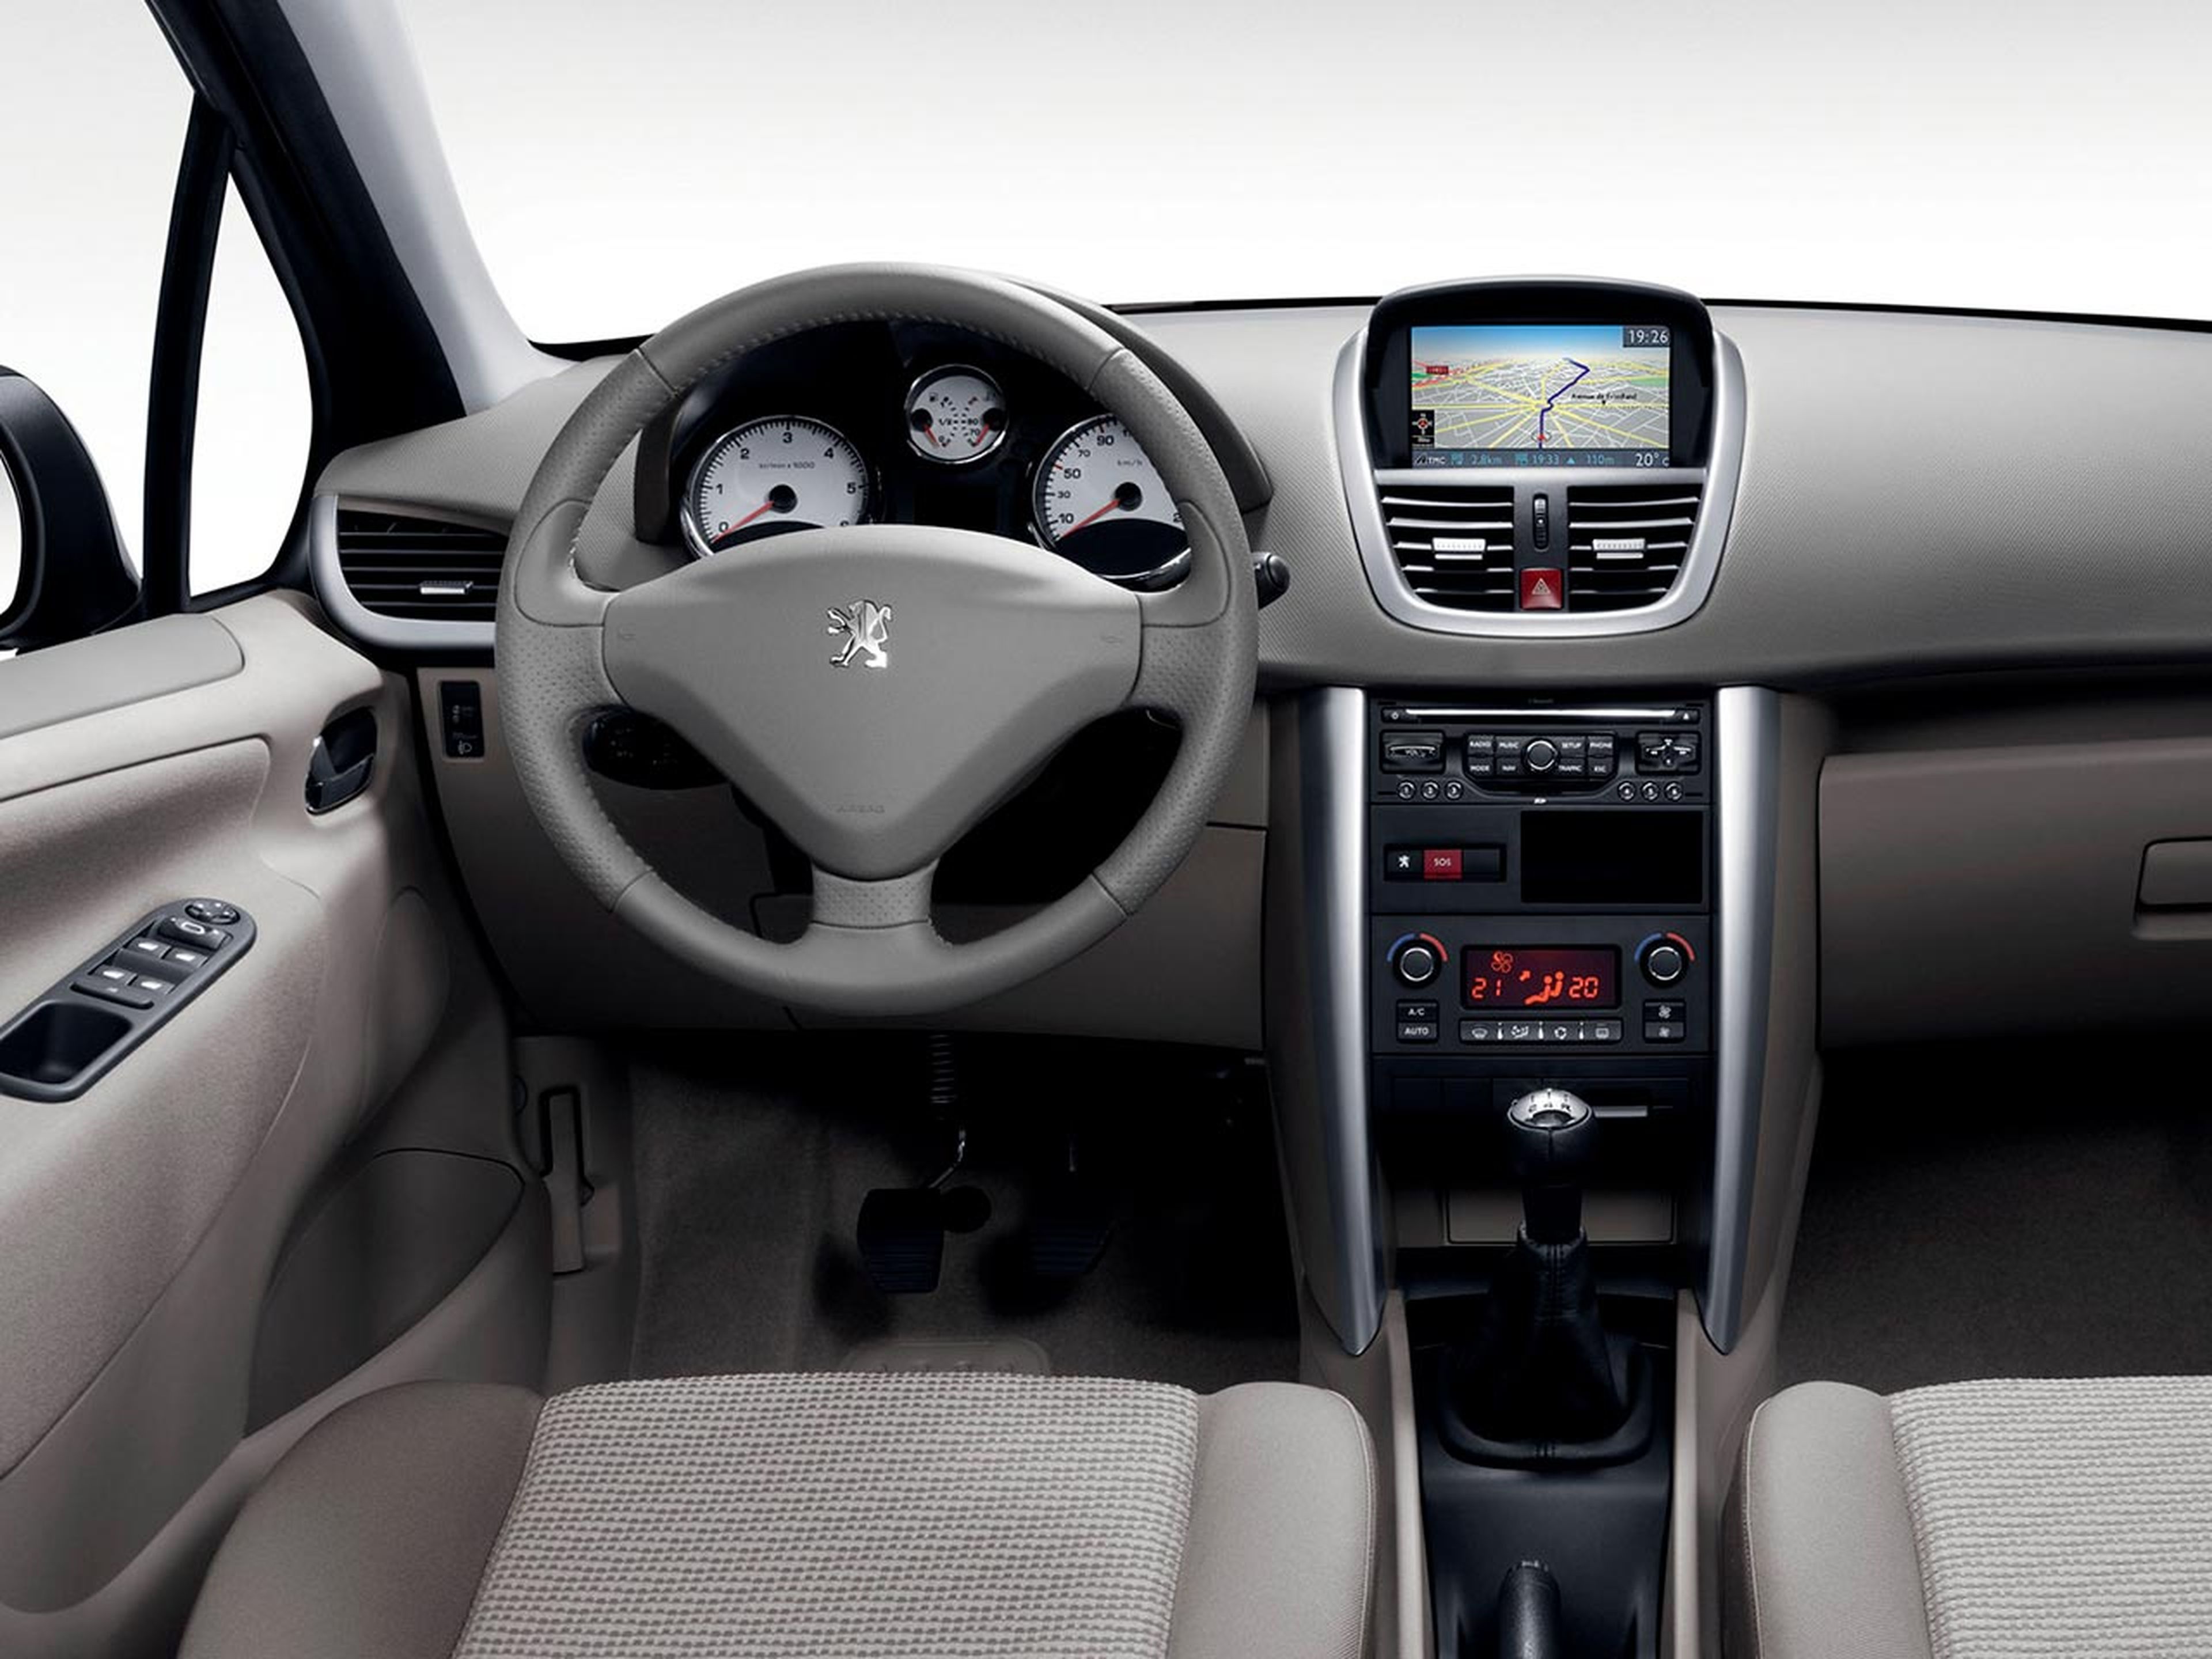 Interior Peugeot 207